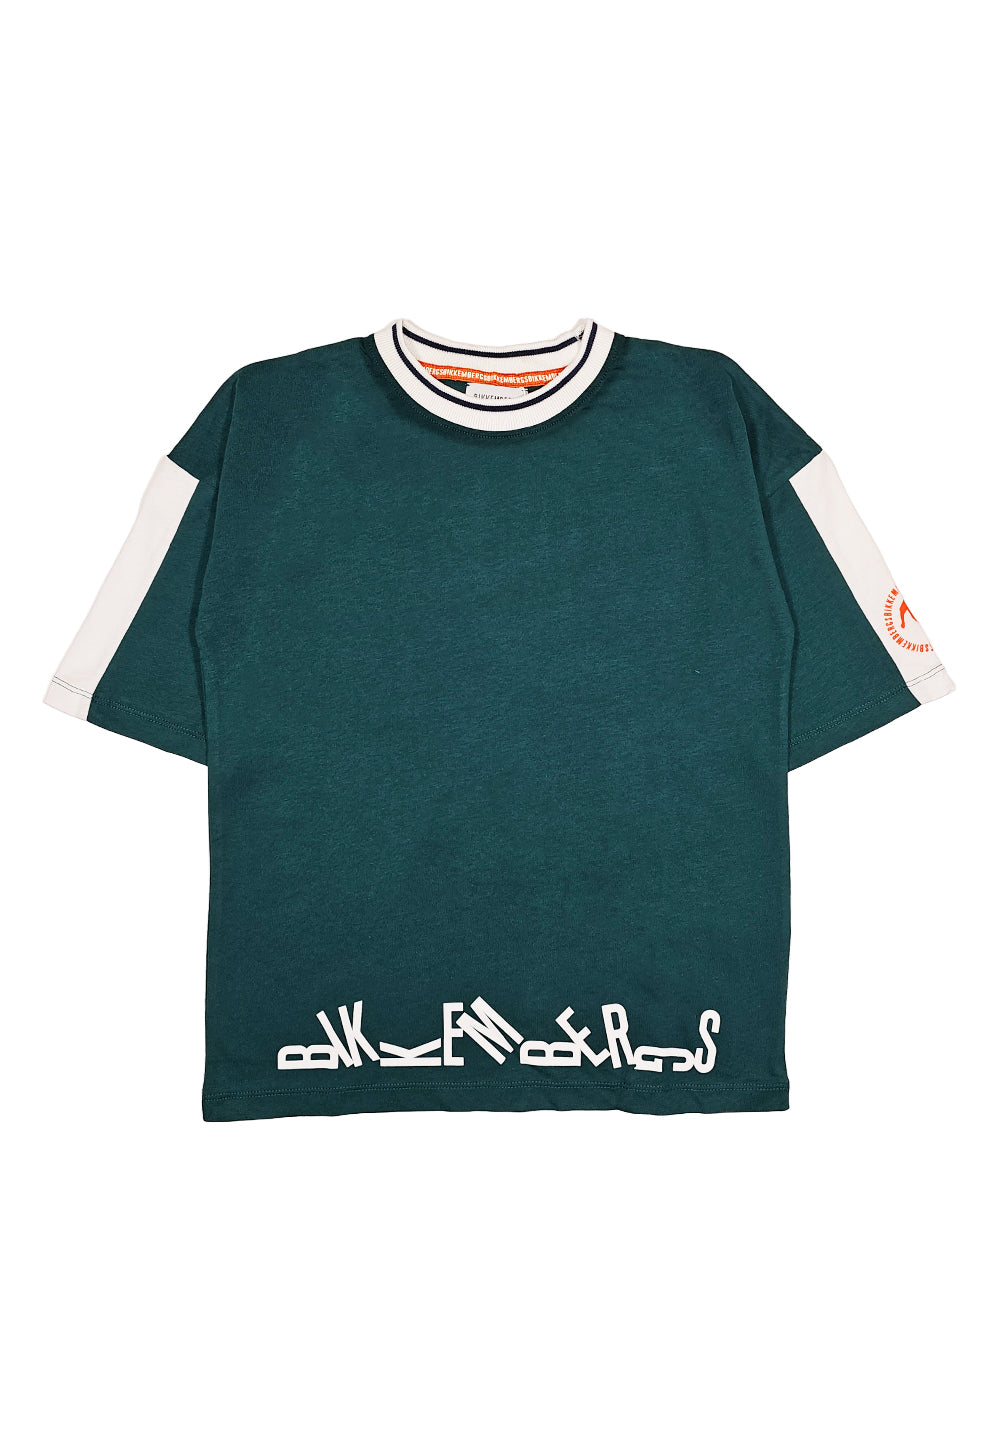 T-shirt verde per bambino - Primamoda kids